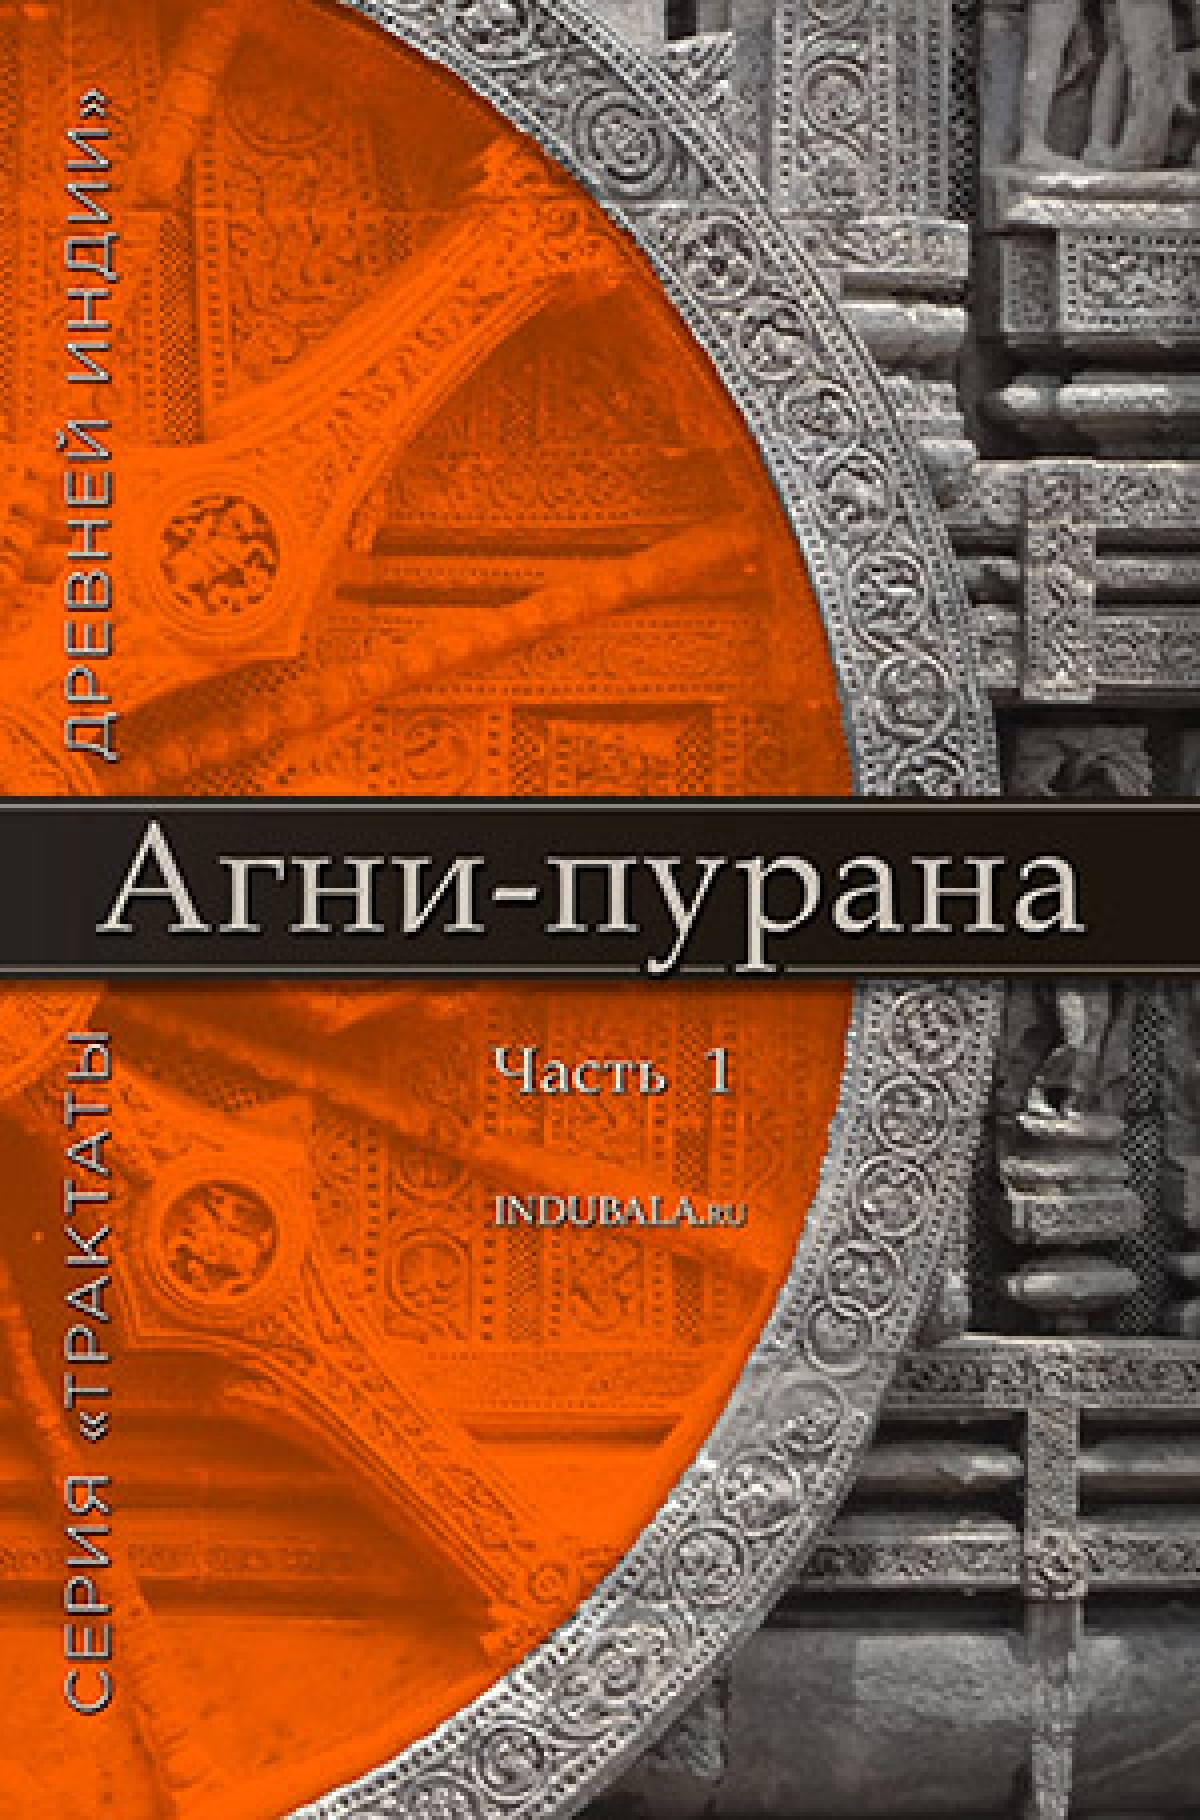 Предисловие переводчика к русскому изданию Агни-пураны